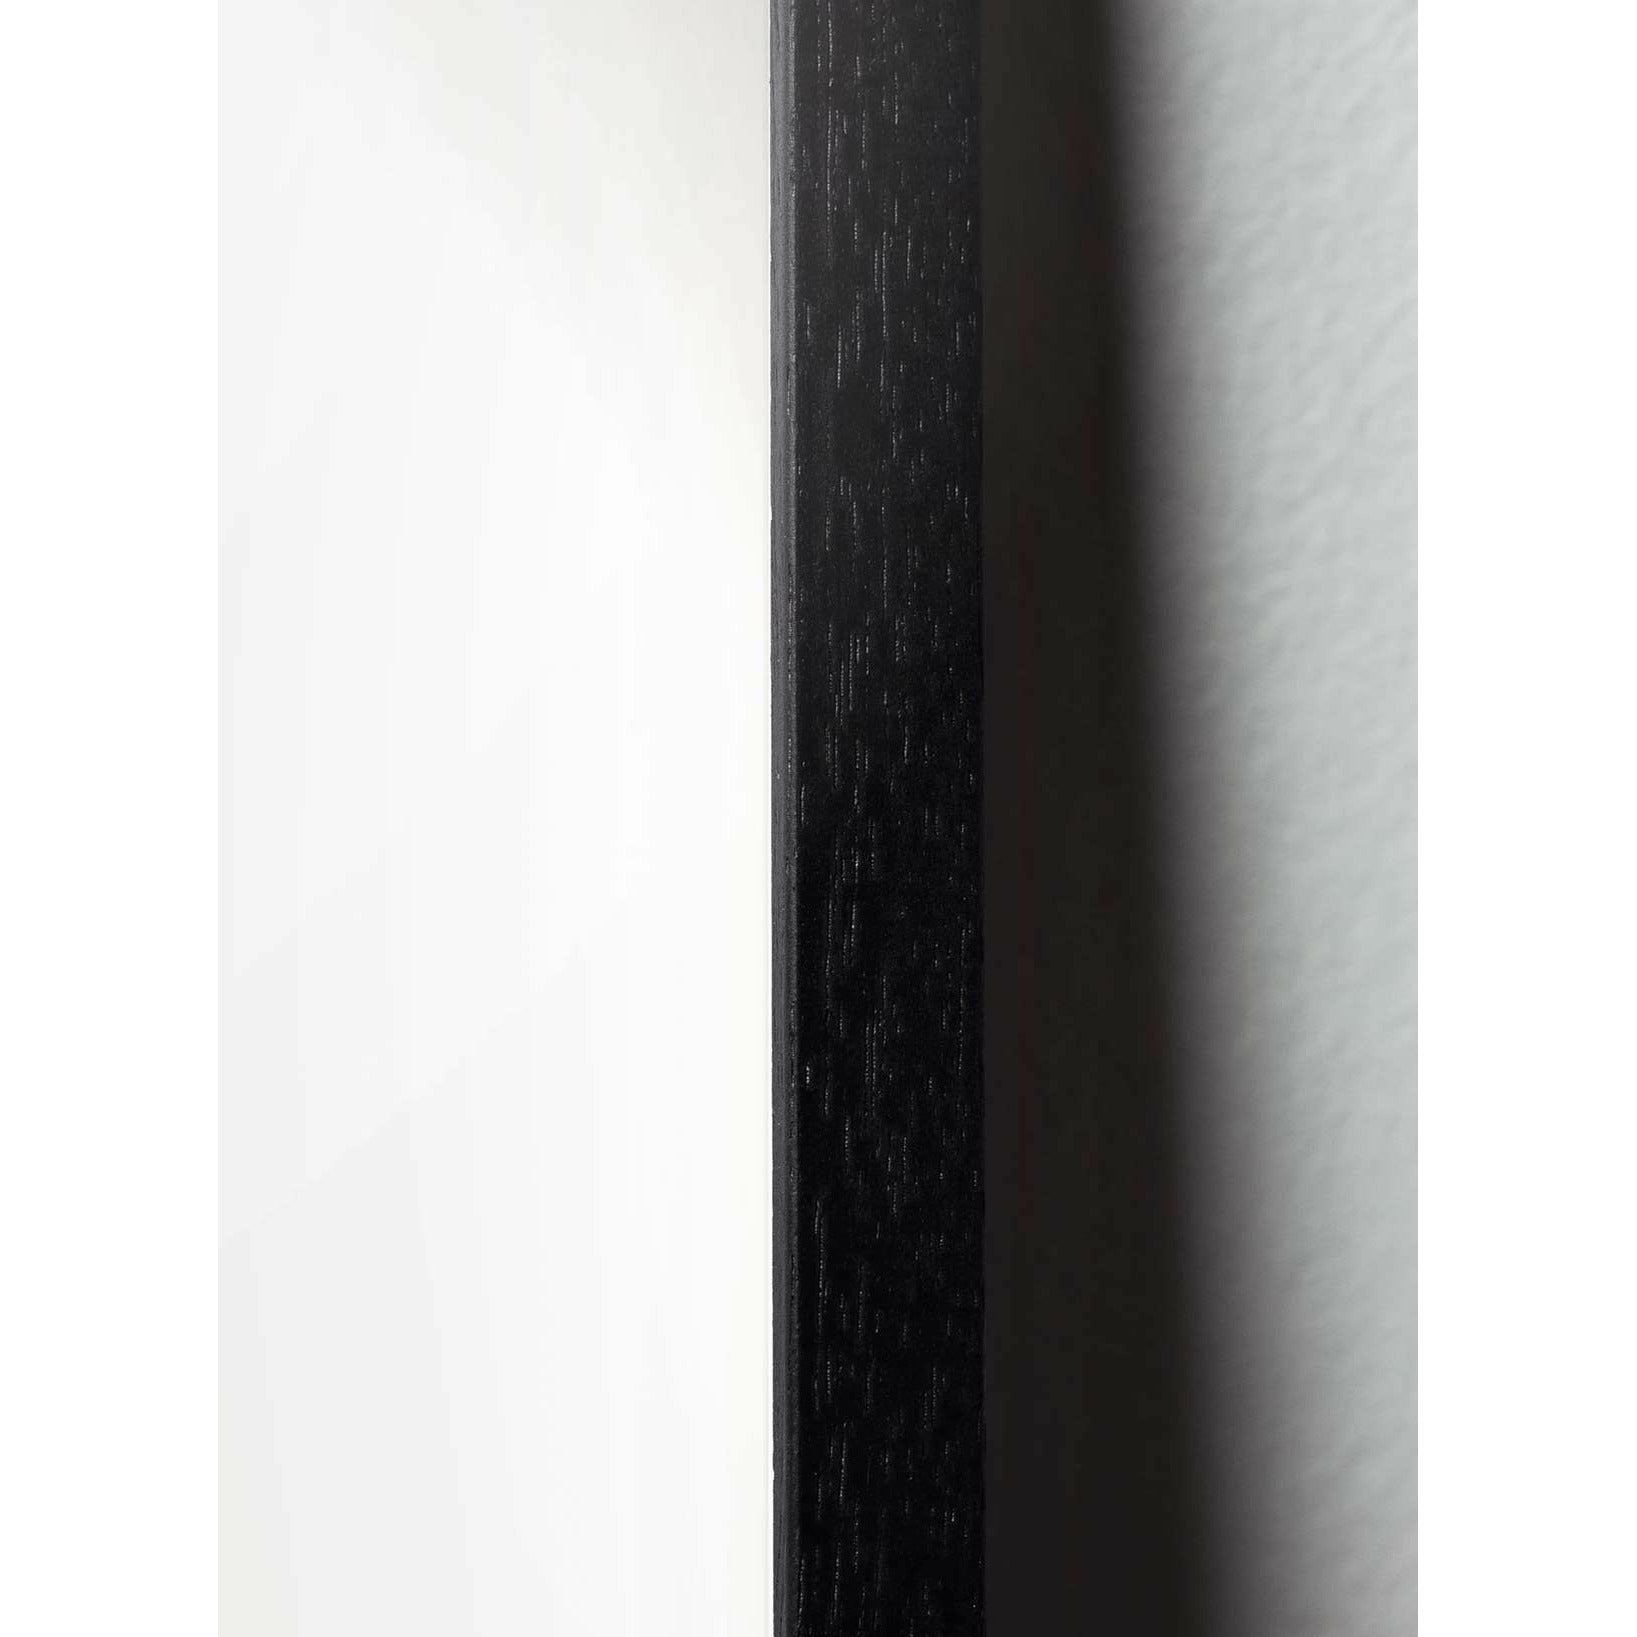 Brainchild Myrslag affisch, ram i svart -målat trä 50x70 cm, vit bakgrund